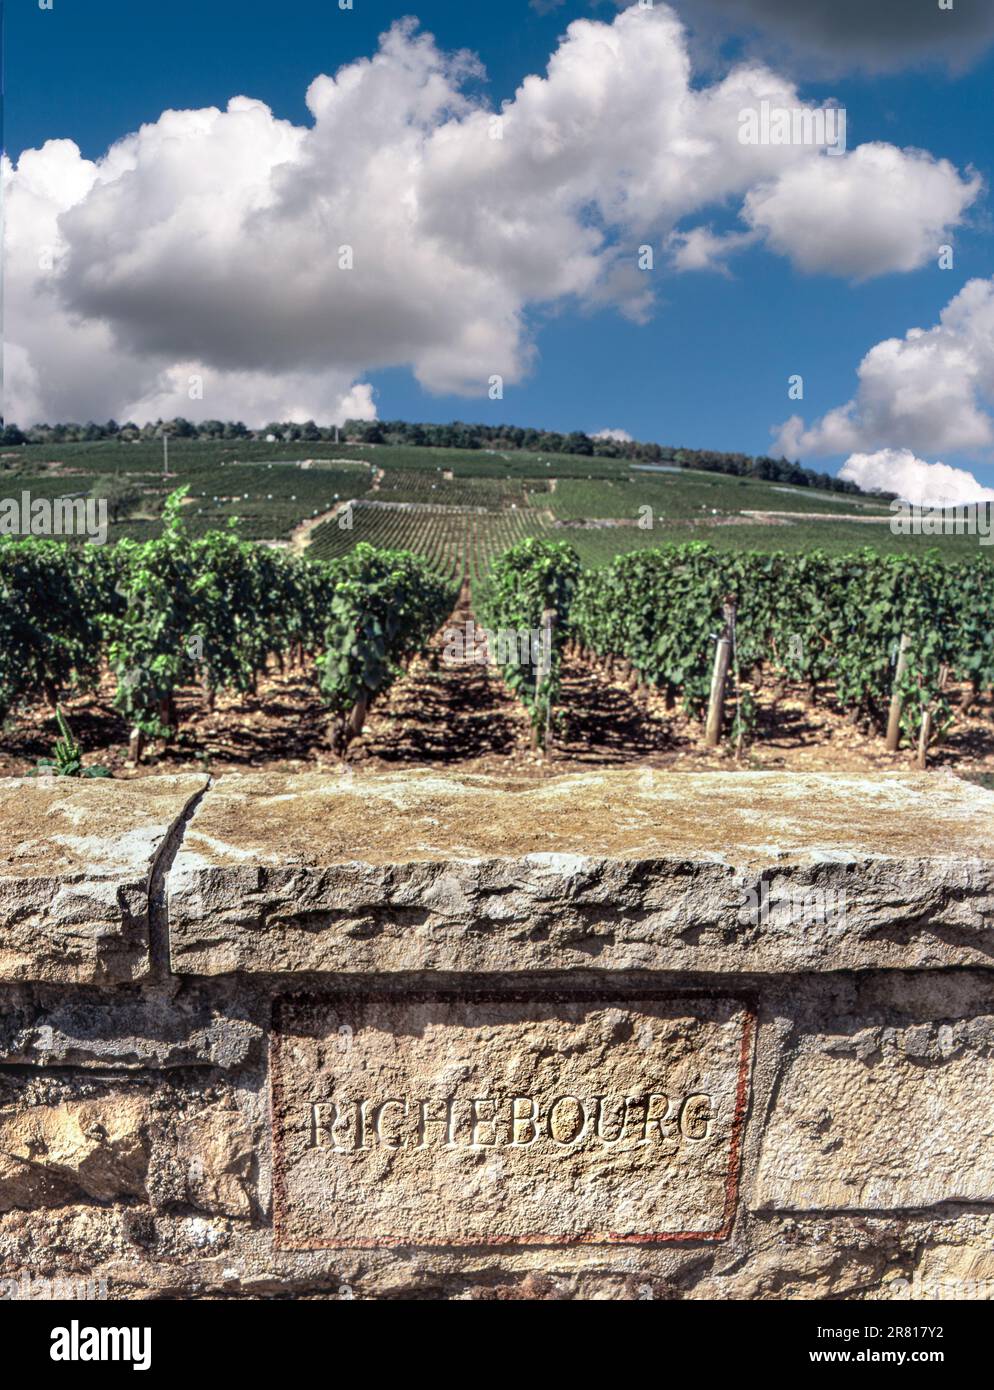 IN RICHEBOURG gravierte Steintafel an der Grenzwand des feinen Weinguts Grand Cru Richebourg der DRK Domaine de la Romanee-Conti Vosne-Romanee, Burgund Stockfoto